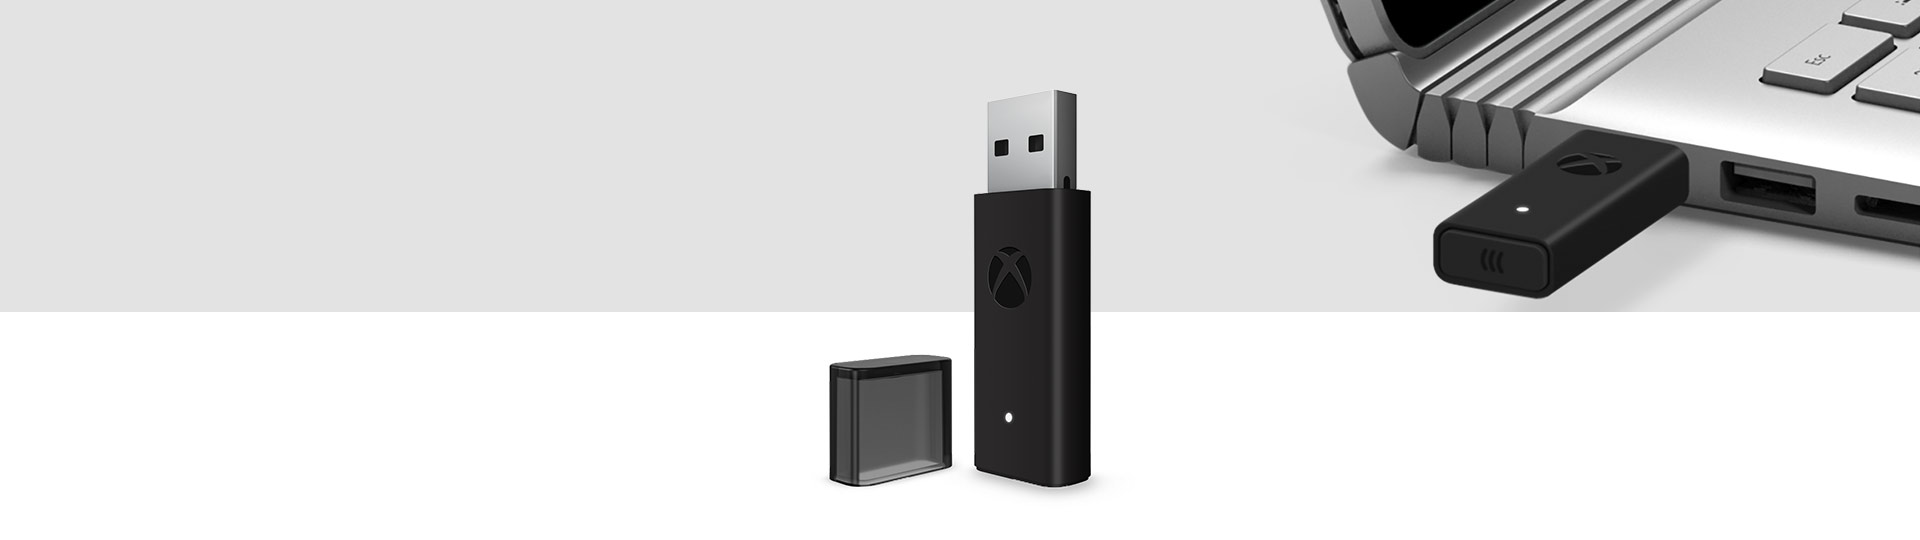 Xbox Wireless Controller Adapter für Windows 10 mit einem Xbox Wireless Adapter, der an einen USB-Anschluss eines Laptops im Hintergrund angeschlossen ist